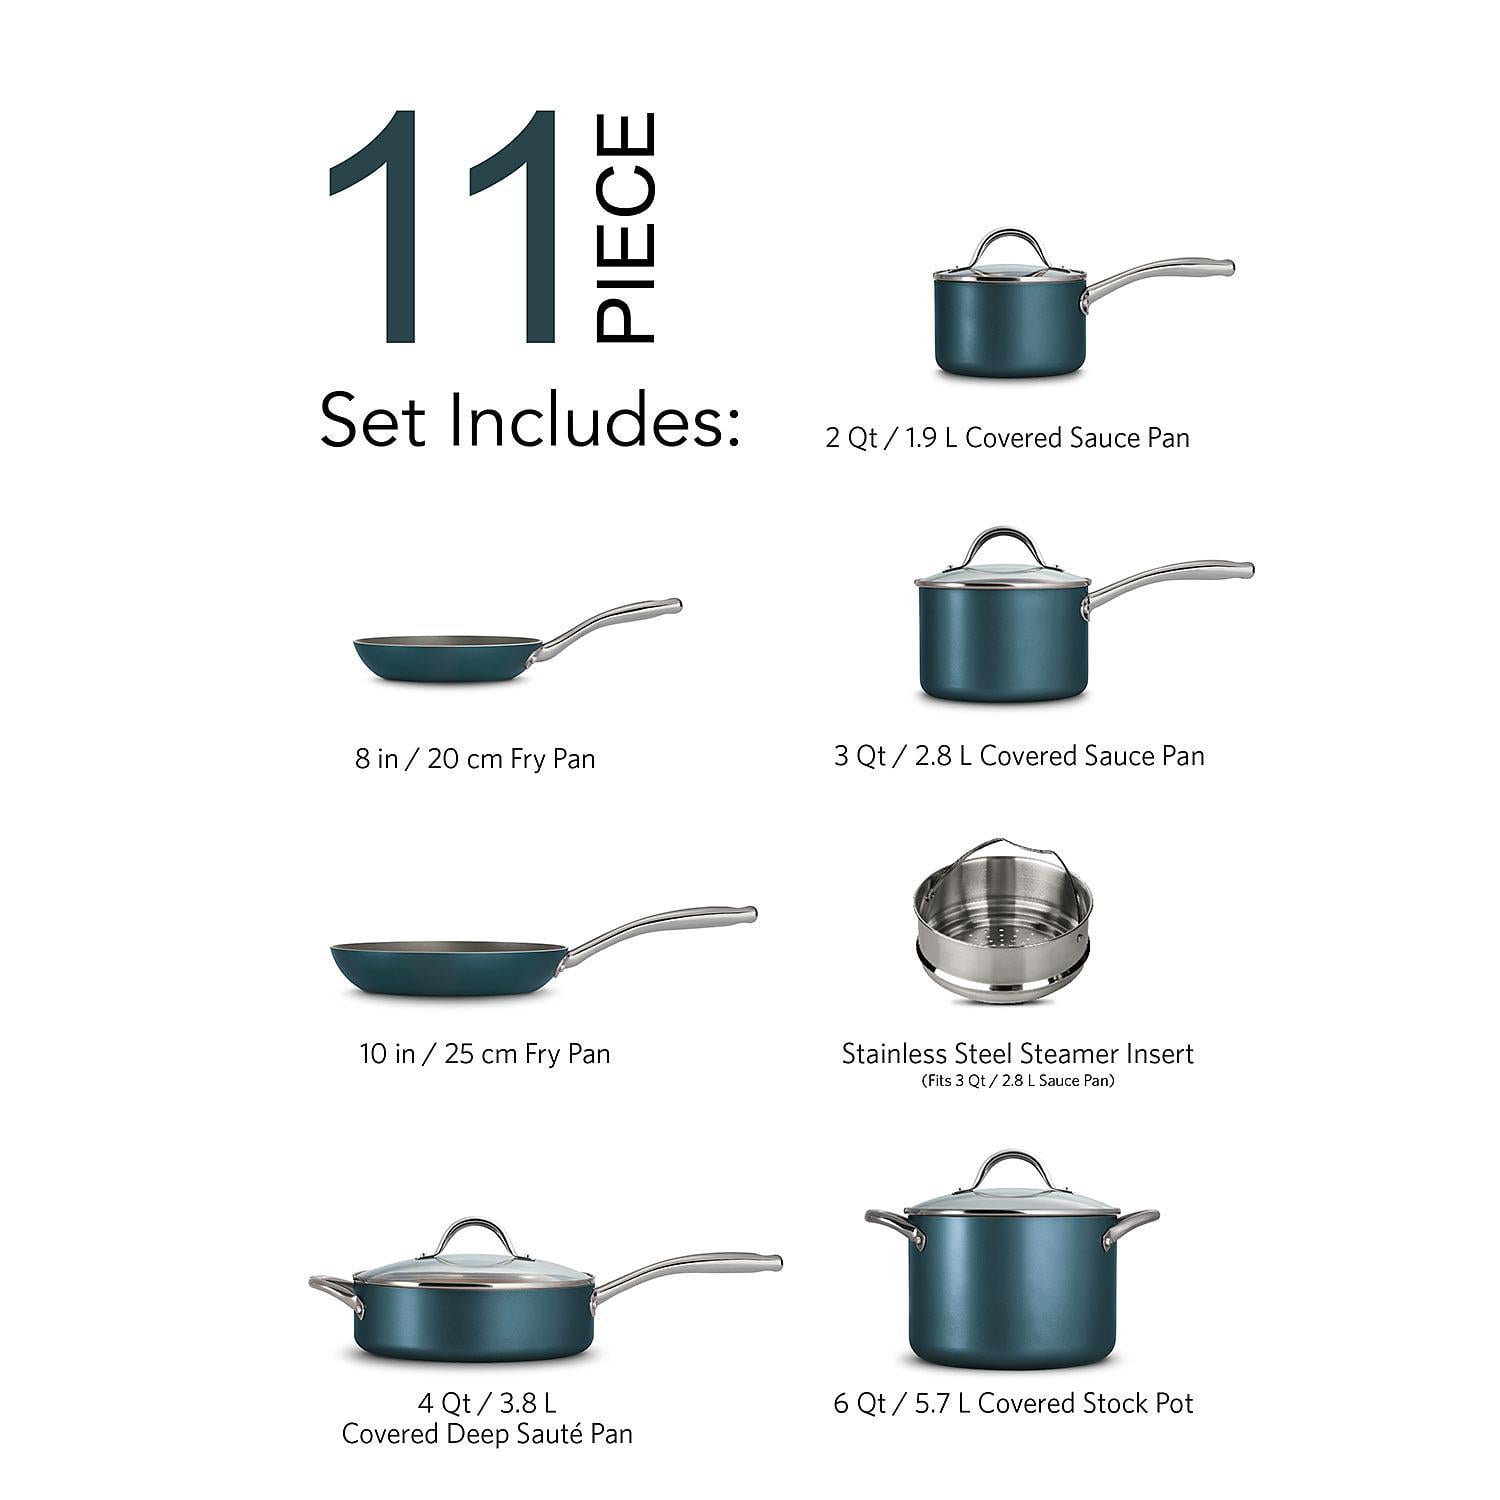 Tramontina Cookware Set Nonstick 11-Piece Blue, 80143/031DS